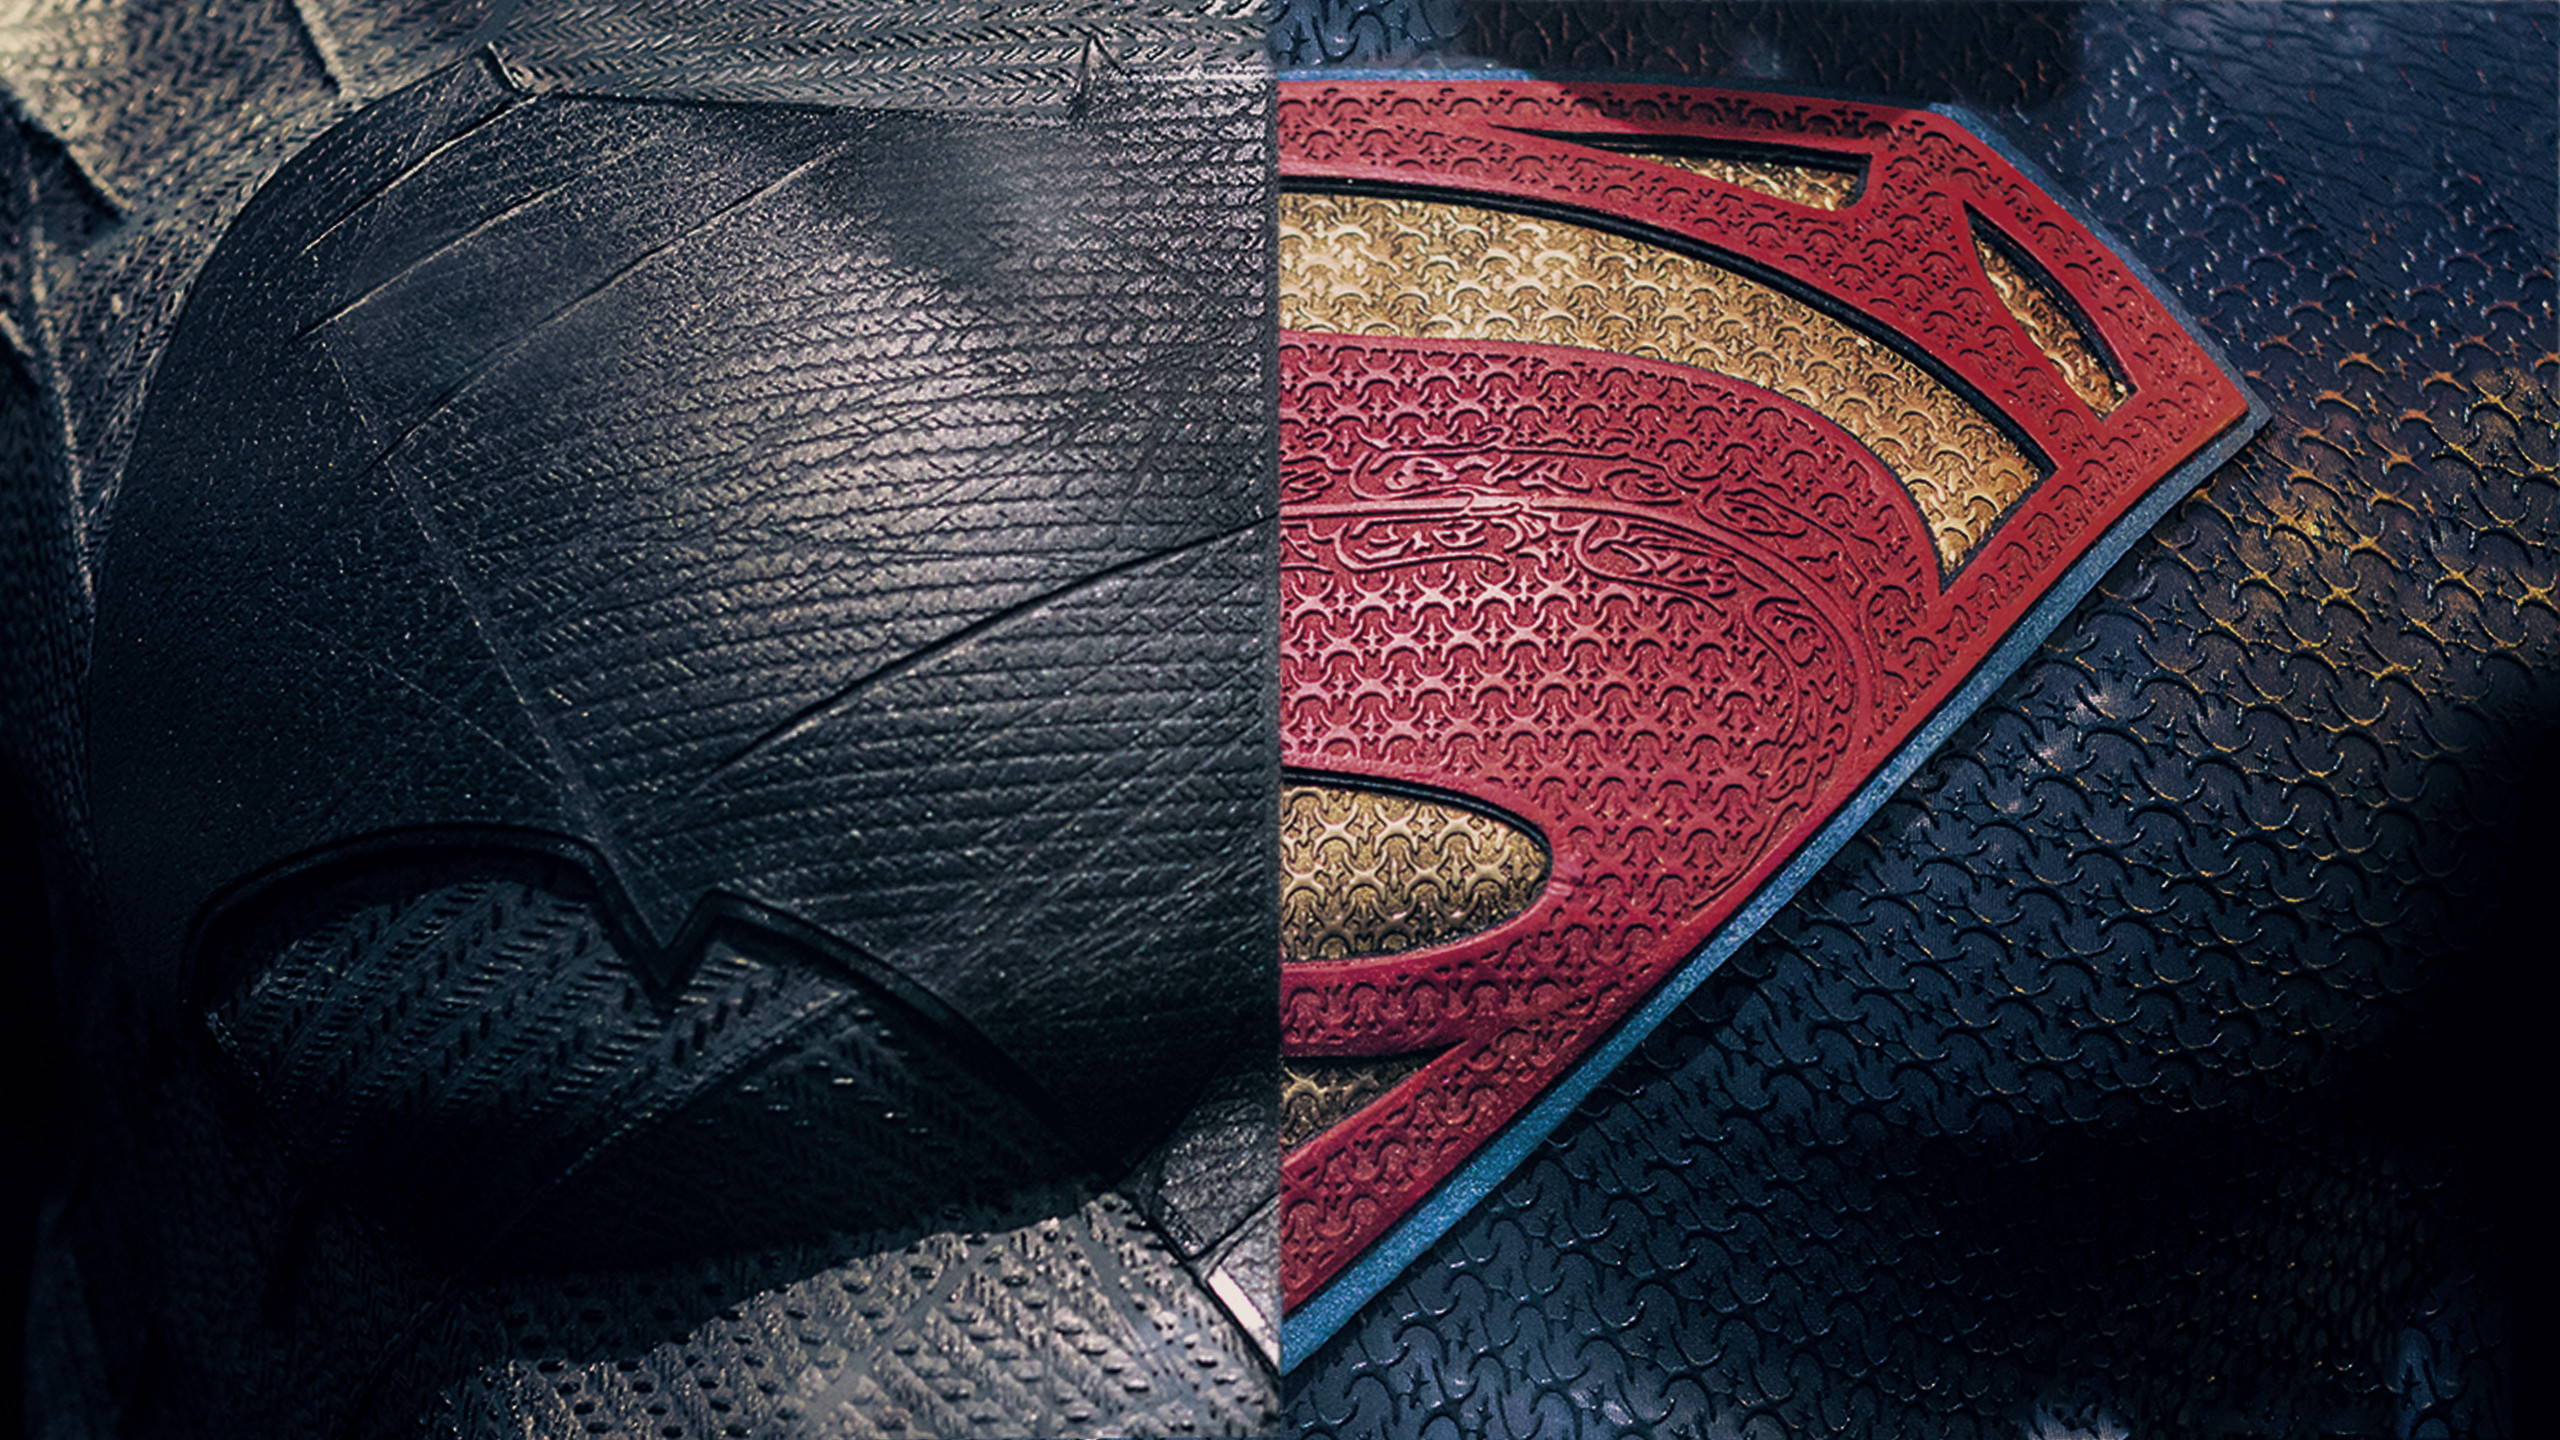 2560x1440 ... Batman And Superman HD Wallpapers Pixels Talk